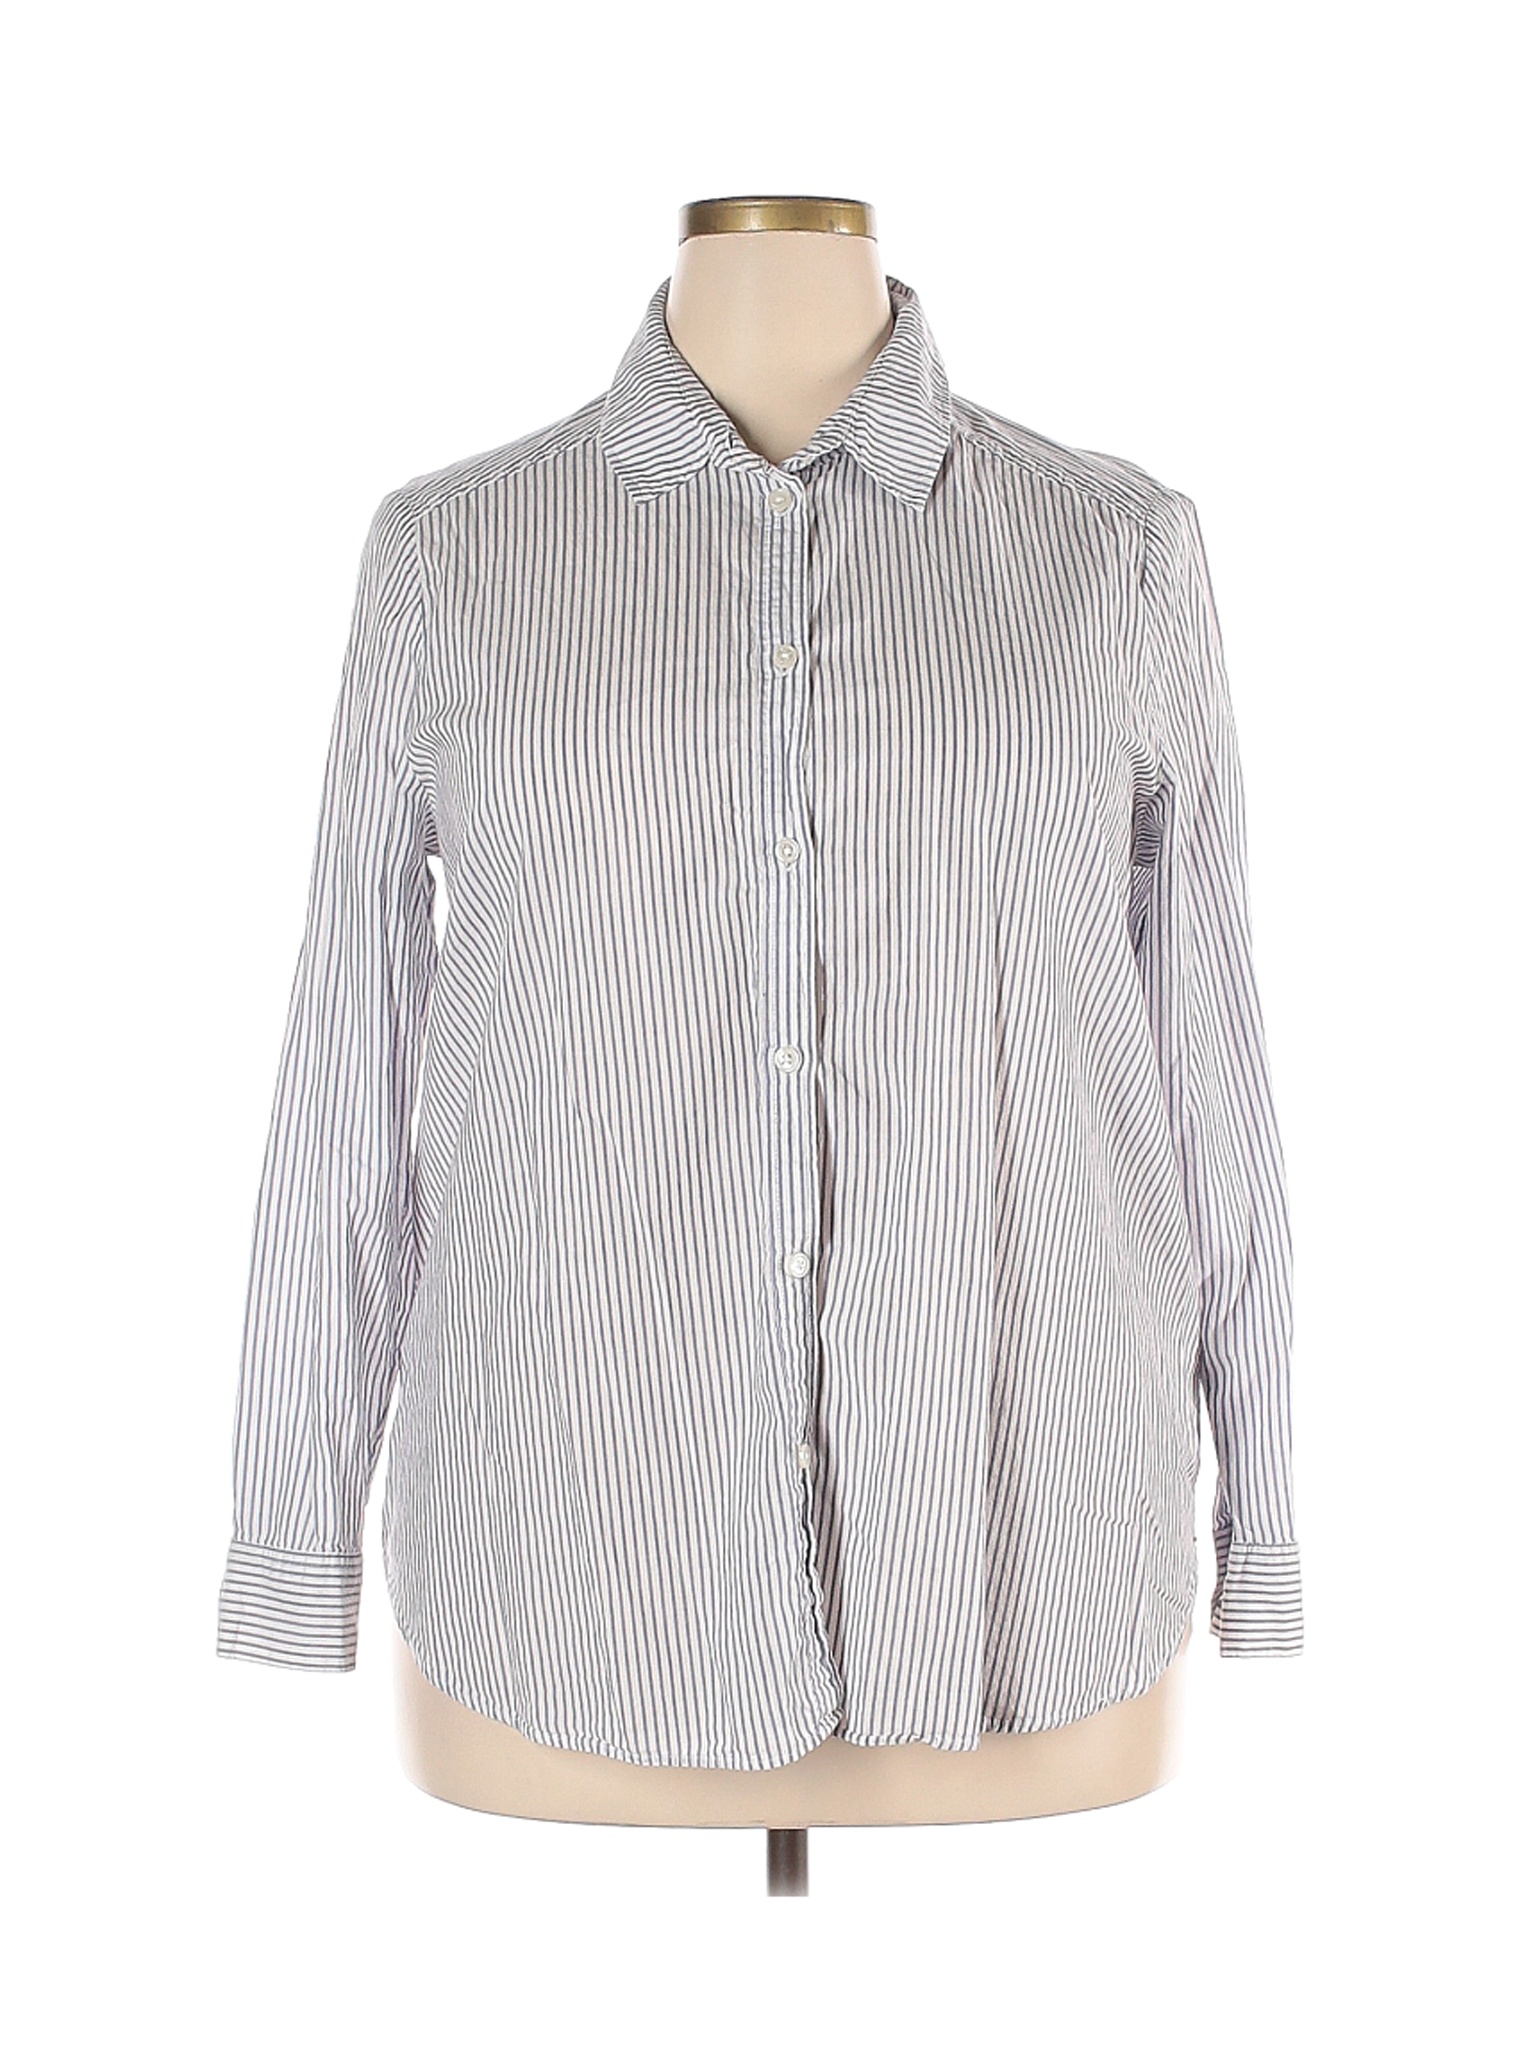 H&M Women White Long Sleeve Button-Down Shirt 18 Plus | eBay